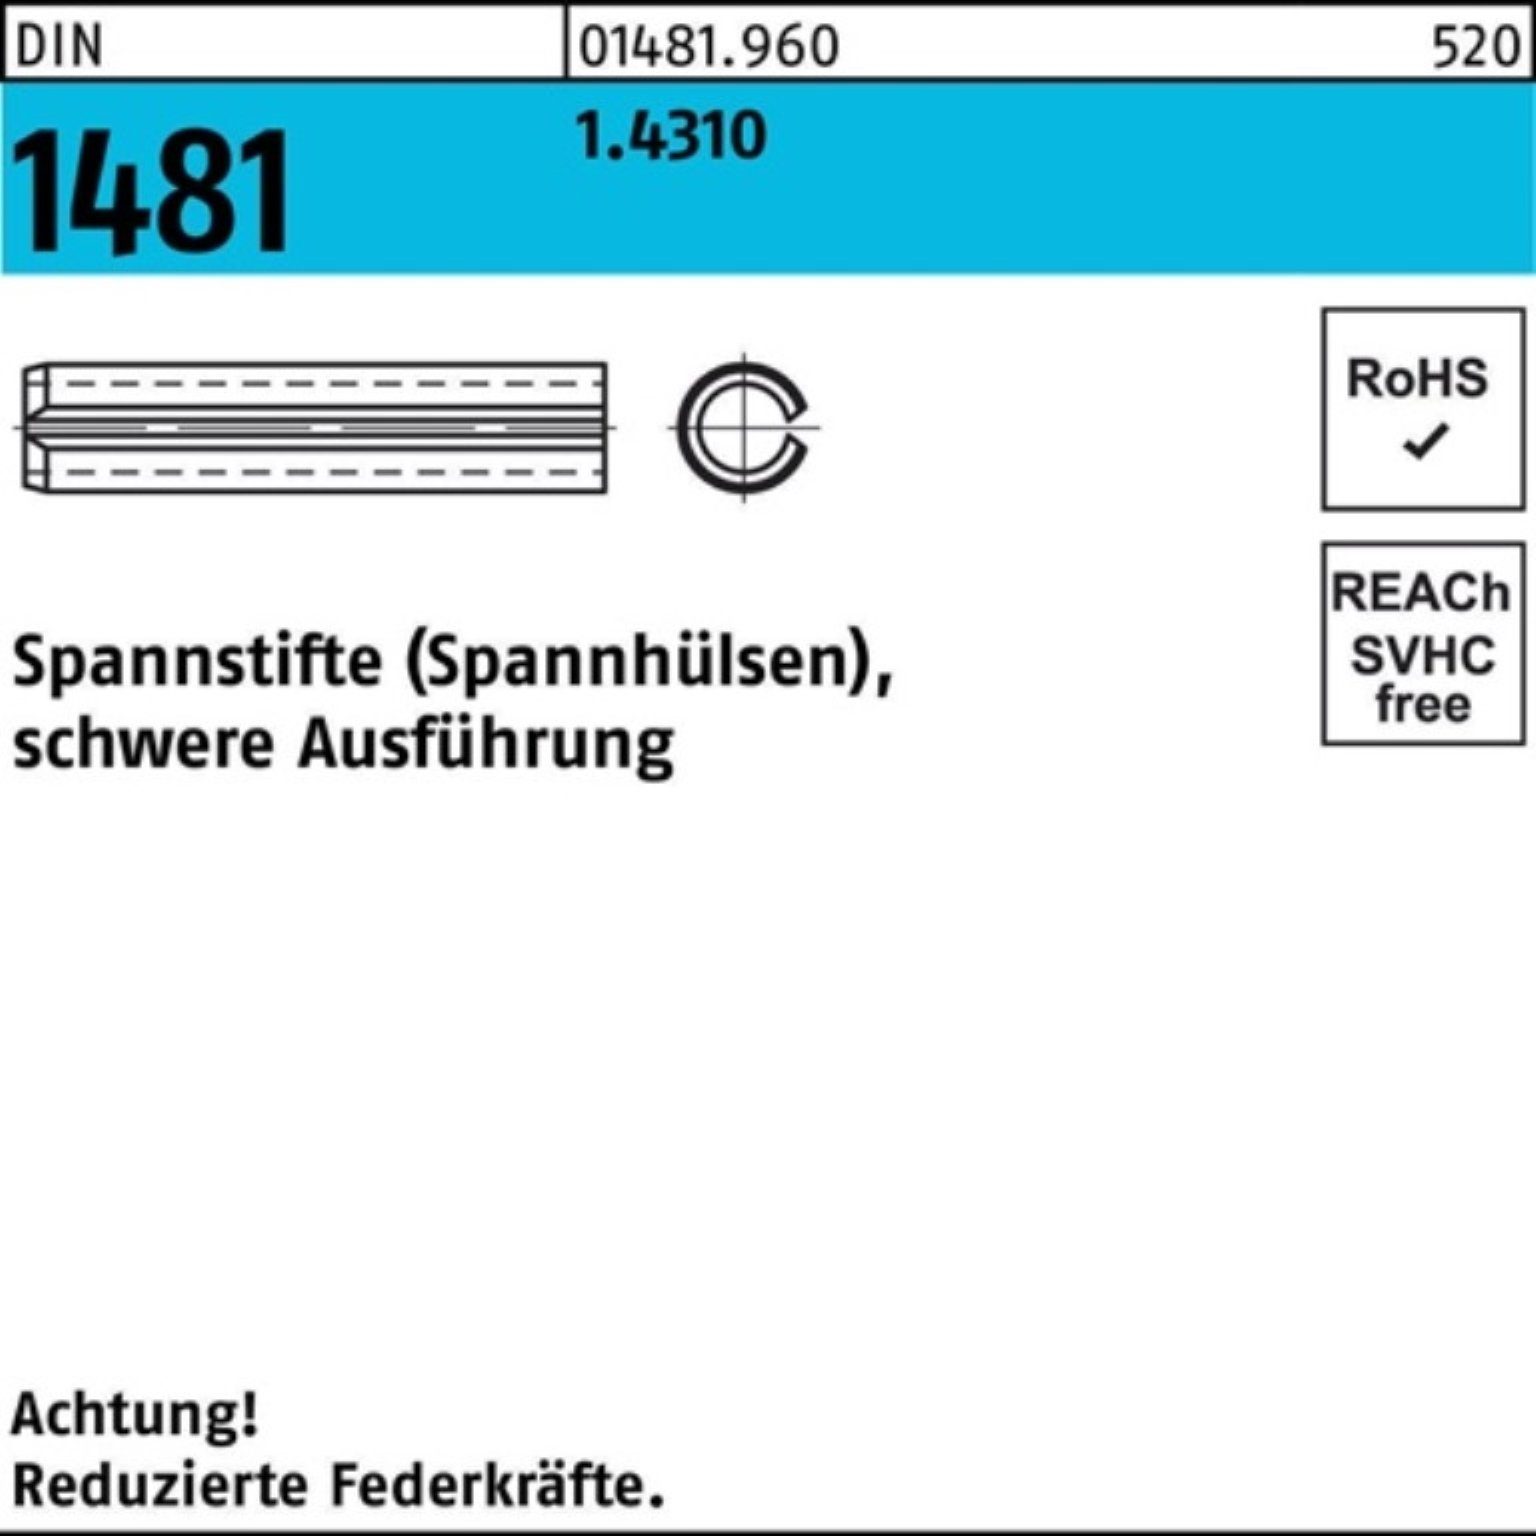 Reyher Spannstift 100er Pack Spannstift 2x Ausführung St 1481 DIN 8 100 schwere 1.4310